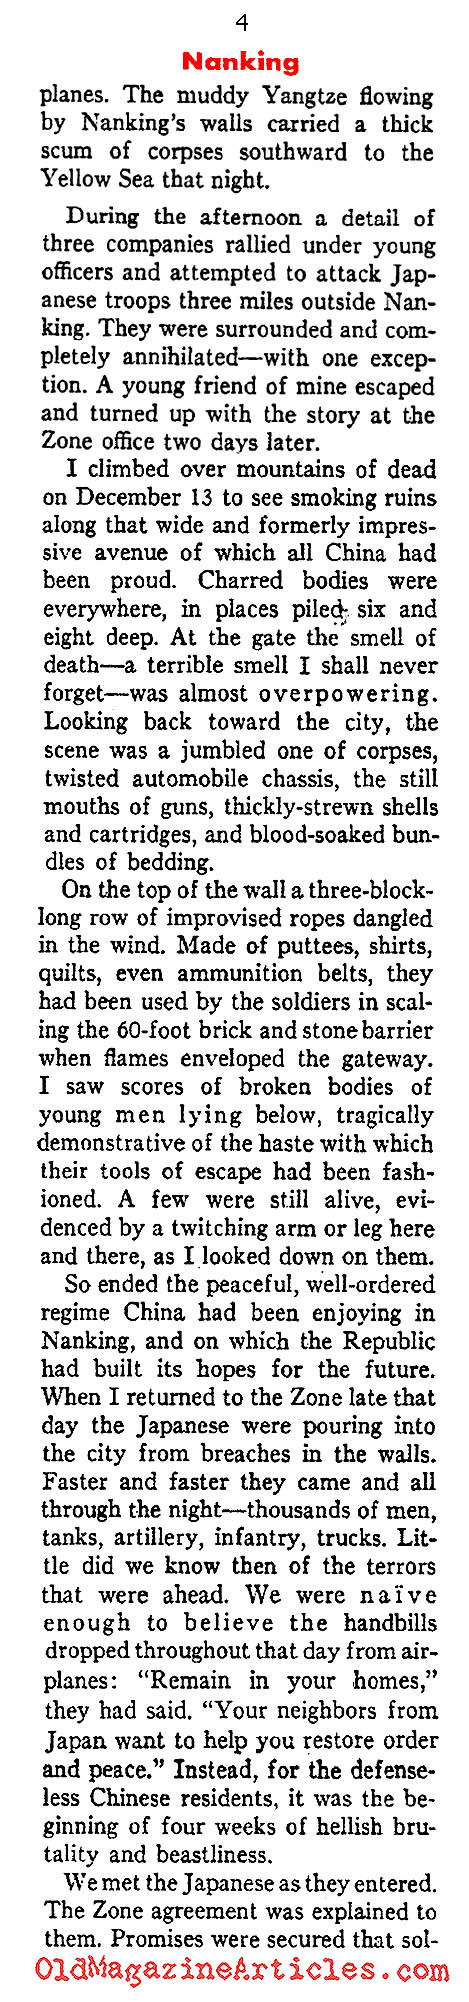 Nanking Ravaged (Ken Magazine, 1938)